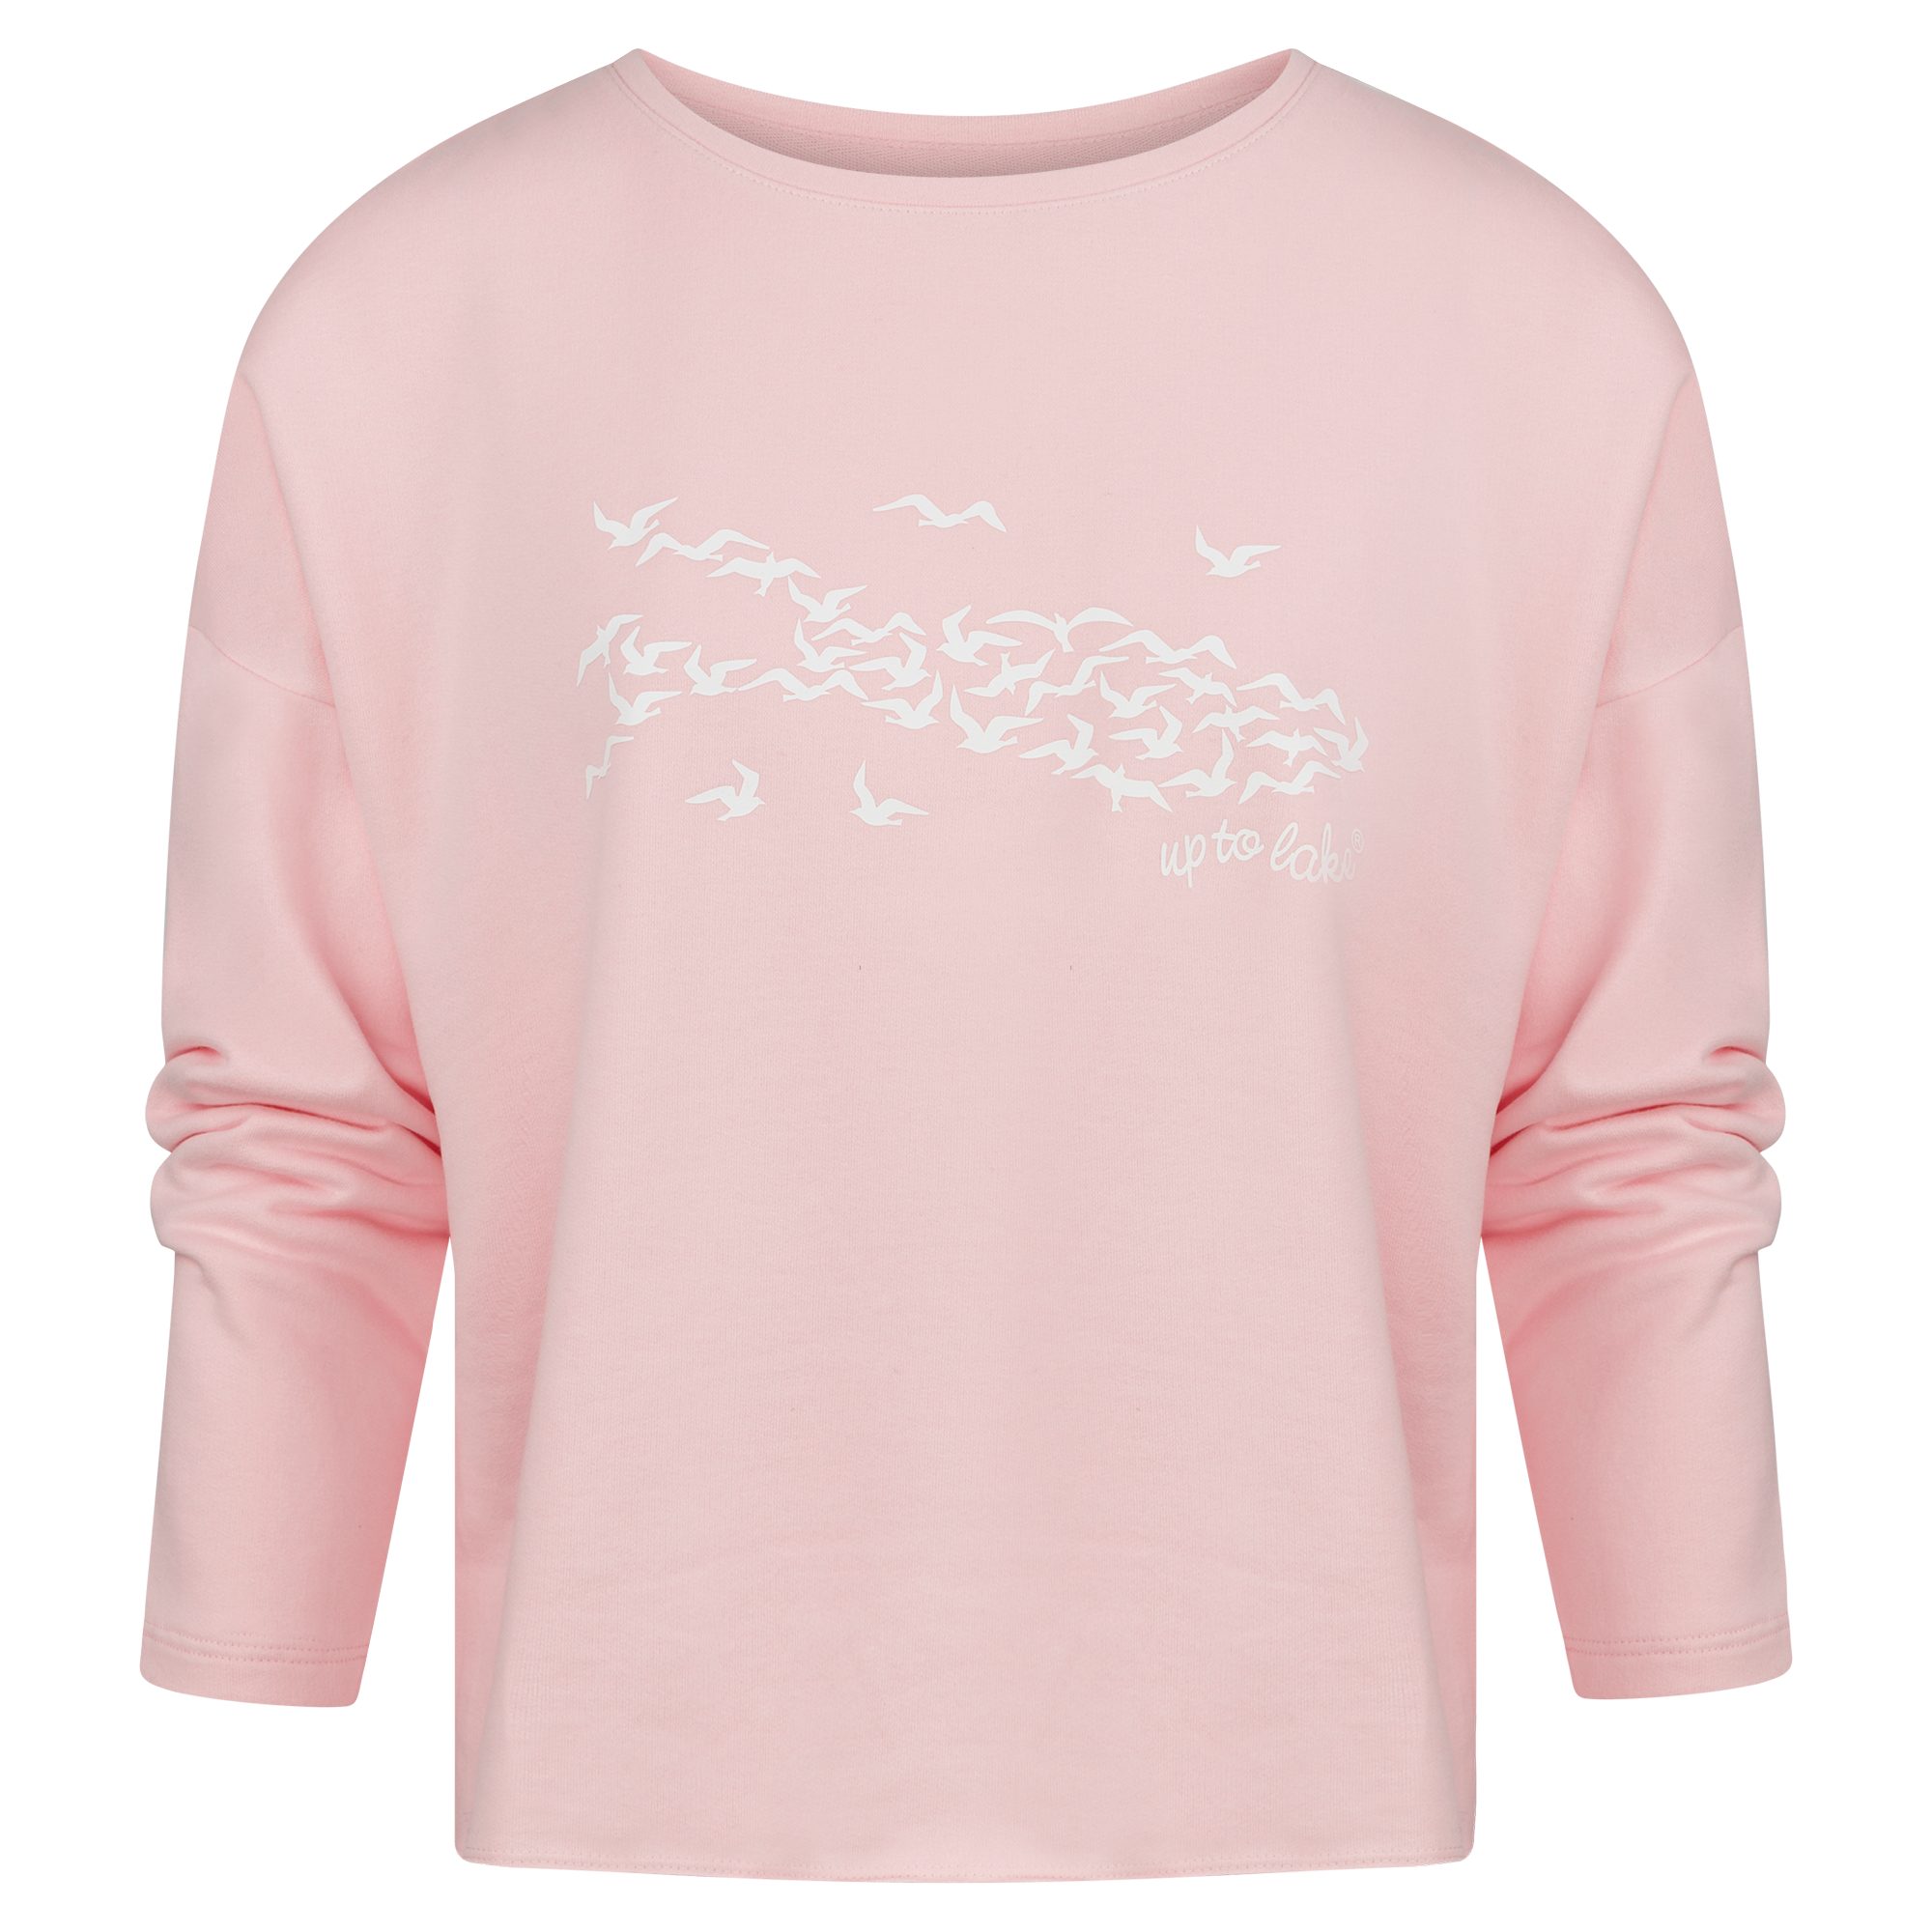 uptolake design Sweatshirt für Damen aus weichem Baumwollstoff mit "Mövensee-Bodensee" Design Rosa/Weiß